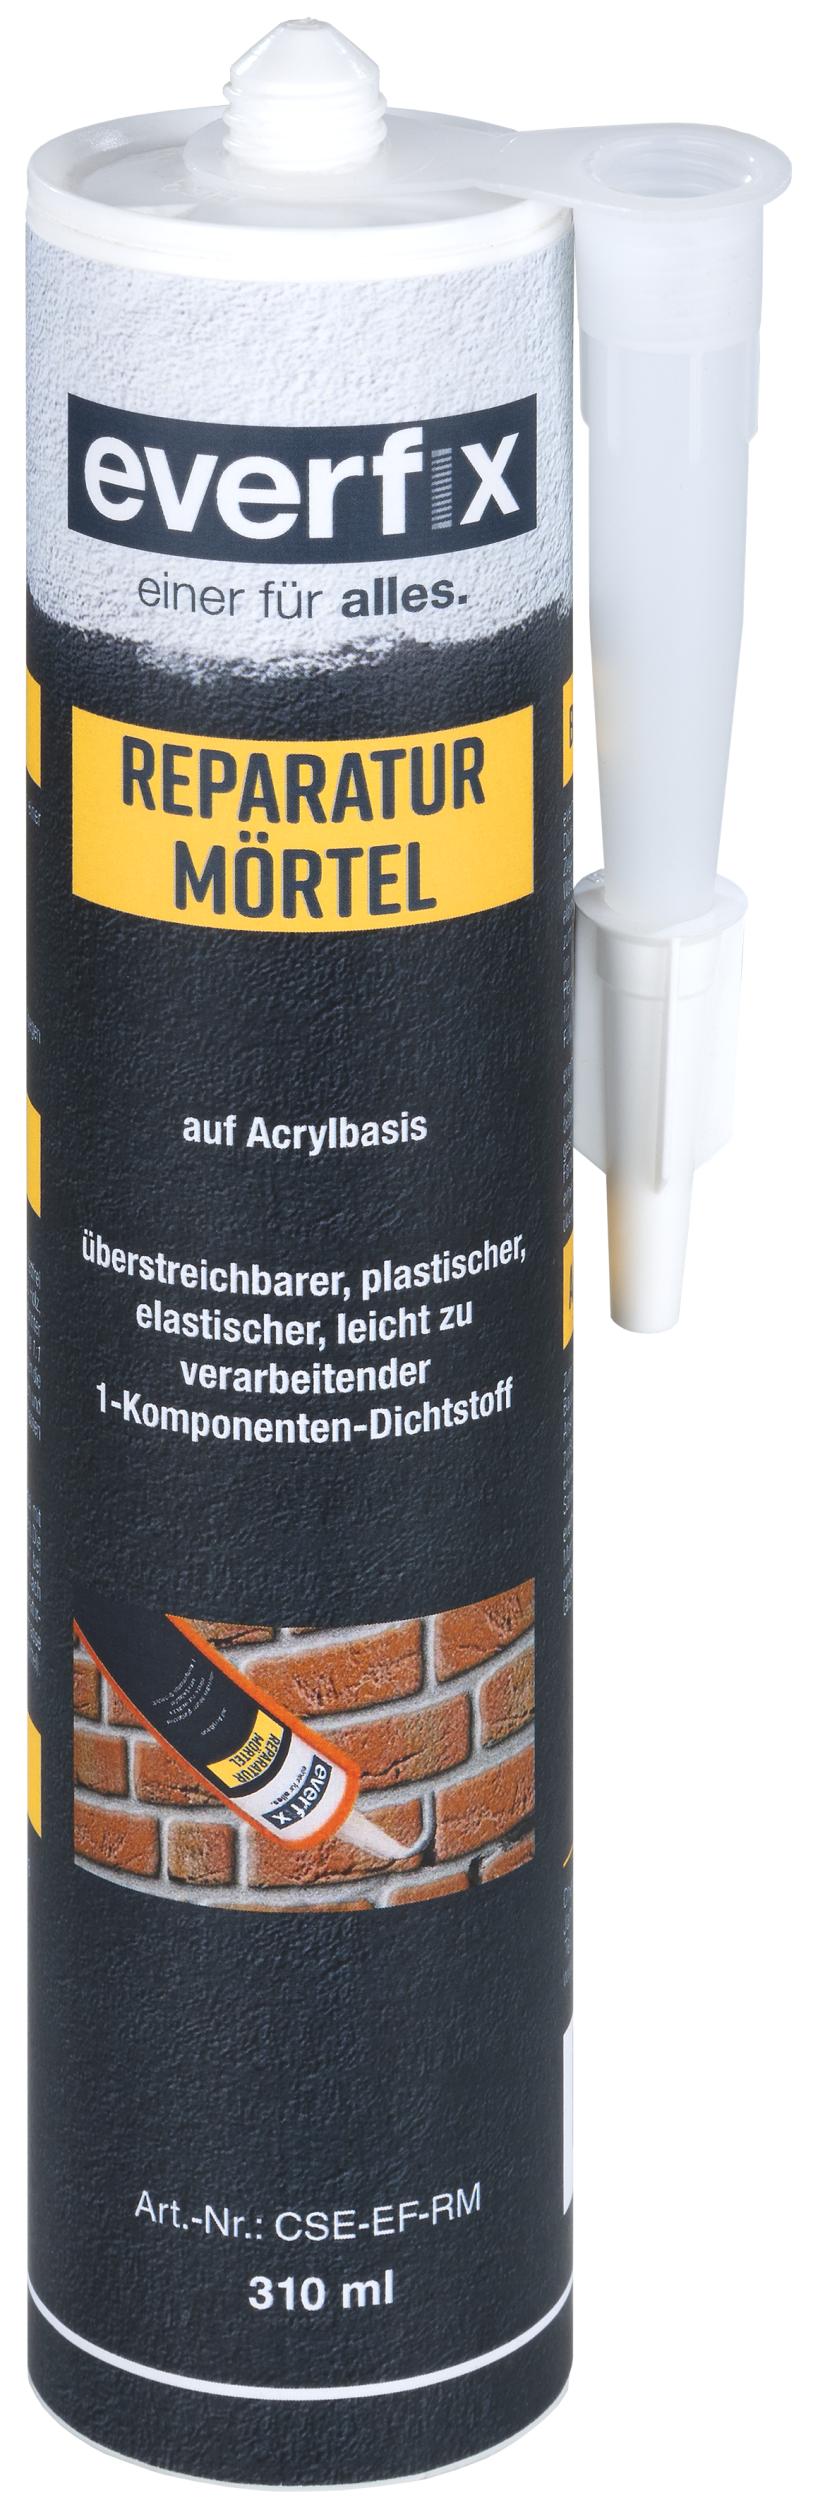 Everfix Reparatur Mörtel in 310 ml Kartusche